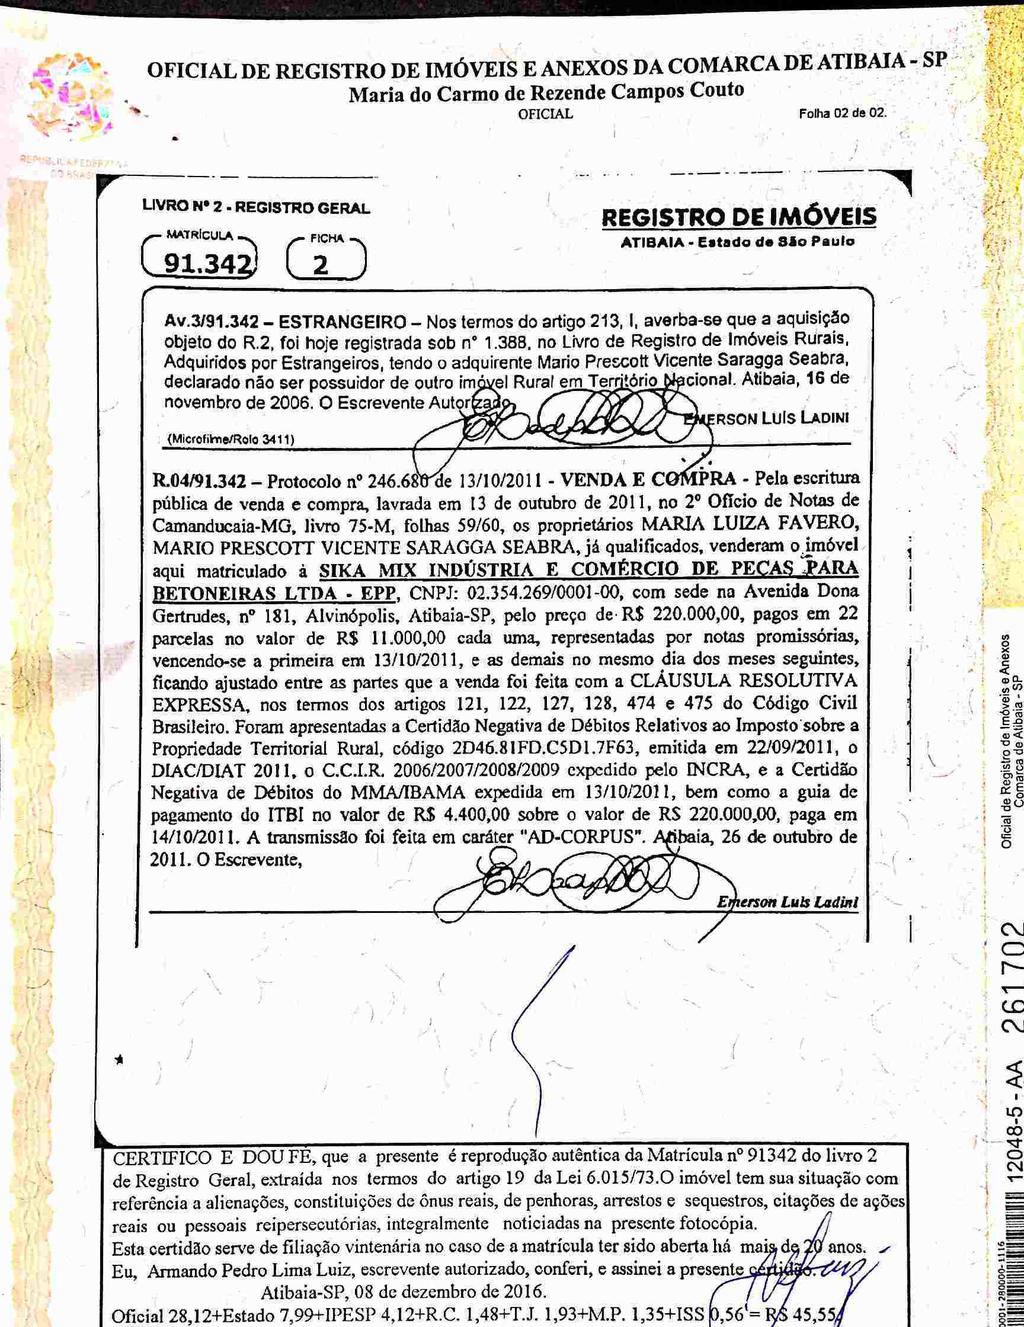 fls. 48 Scanned by CamScanner Este documento é cópia do original, assinado digitalmente por FERNANDO ALVARENGA RODRIGUES e Tribunal de Justica do Estado de Sao Paulo, protocolado em 08/12/2016 às